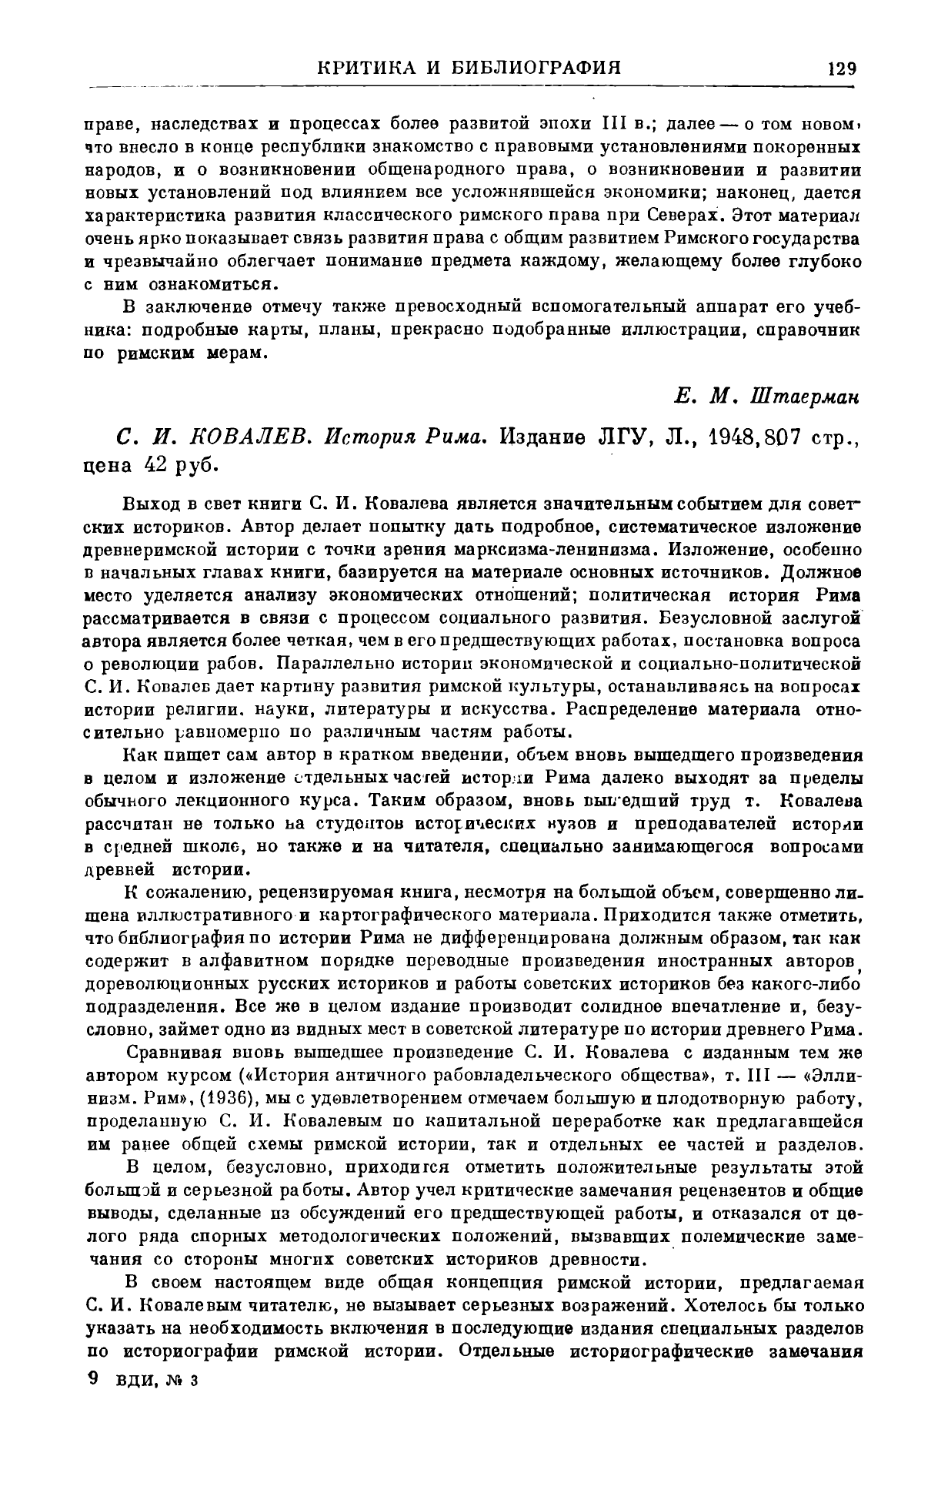 Бокщанин А.Г. – С.И. Ковалев. История Рима. Л., 1948